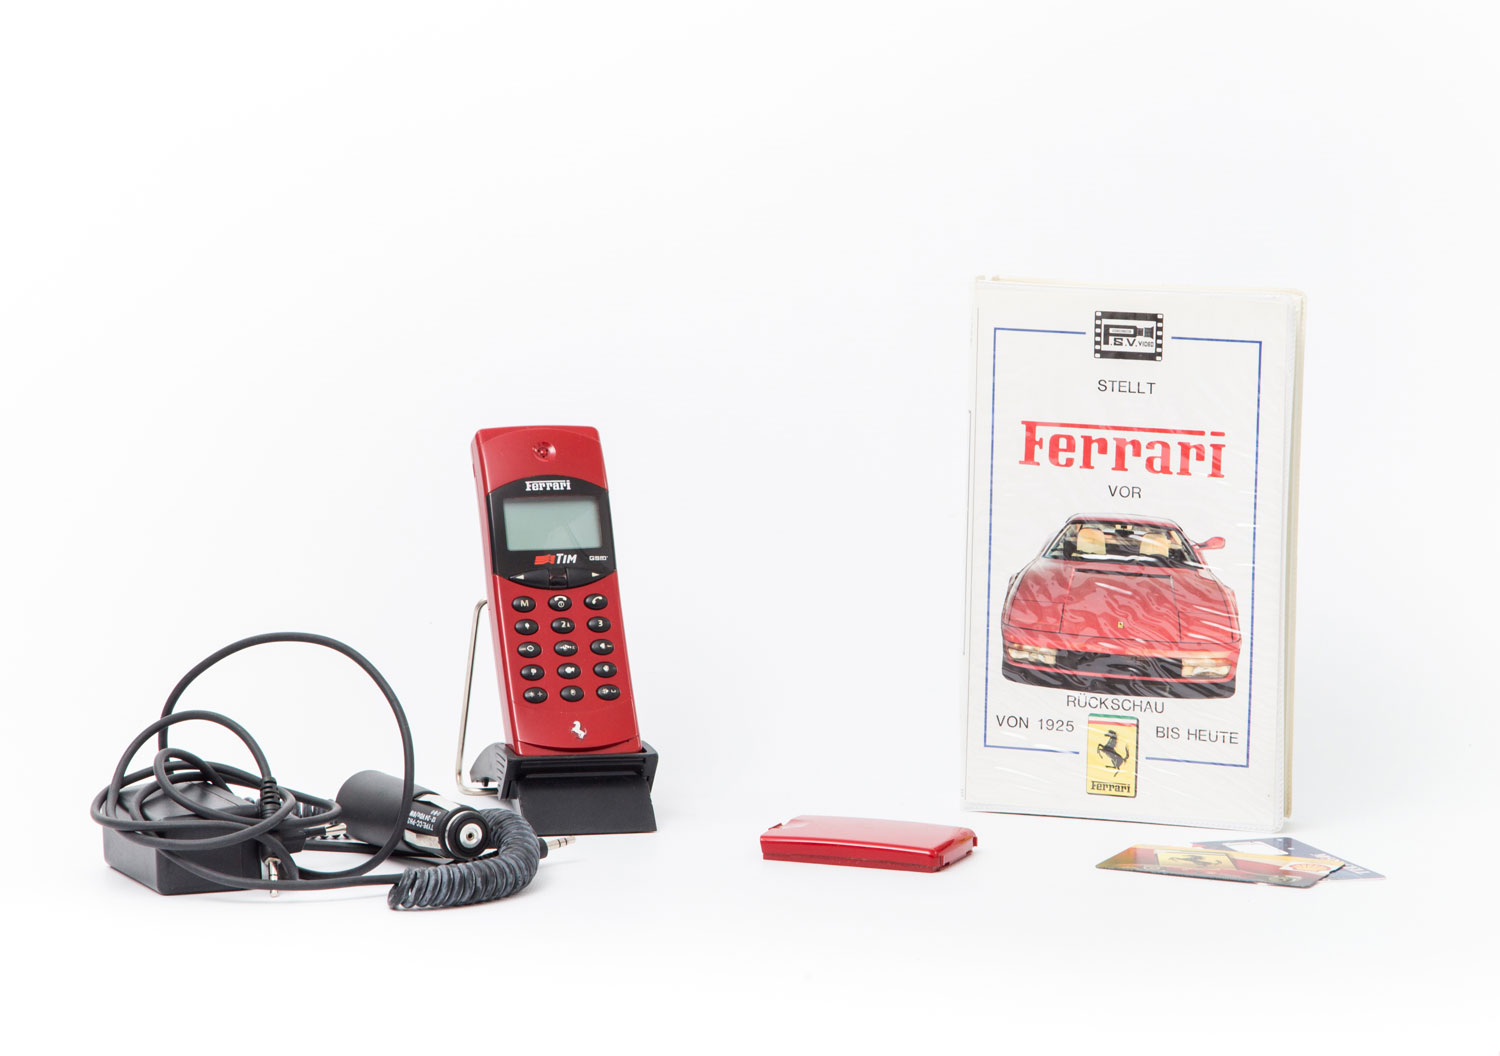 FERRARI - Zweiteiliges Konvolut für Ferrari-Liebhaber - Mobiltelefon + VHS, Retro-Mobiltelefon im